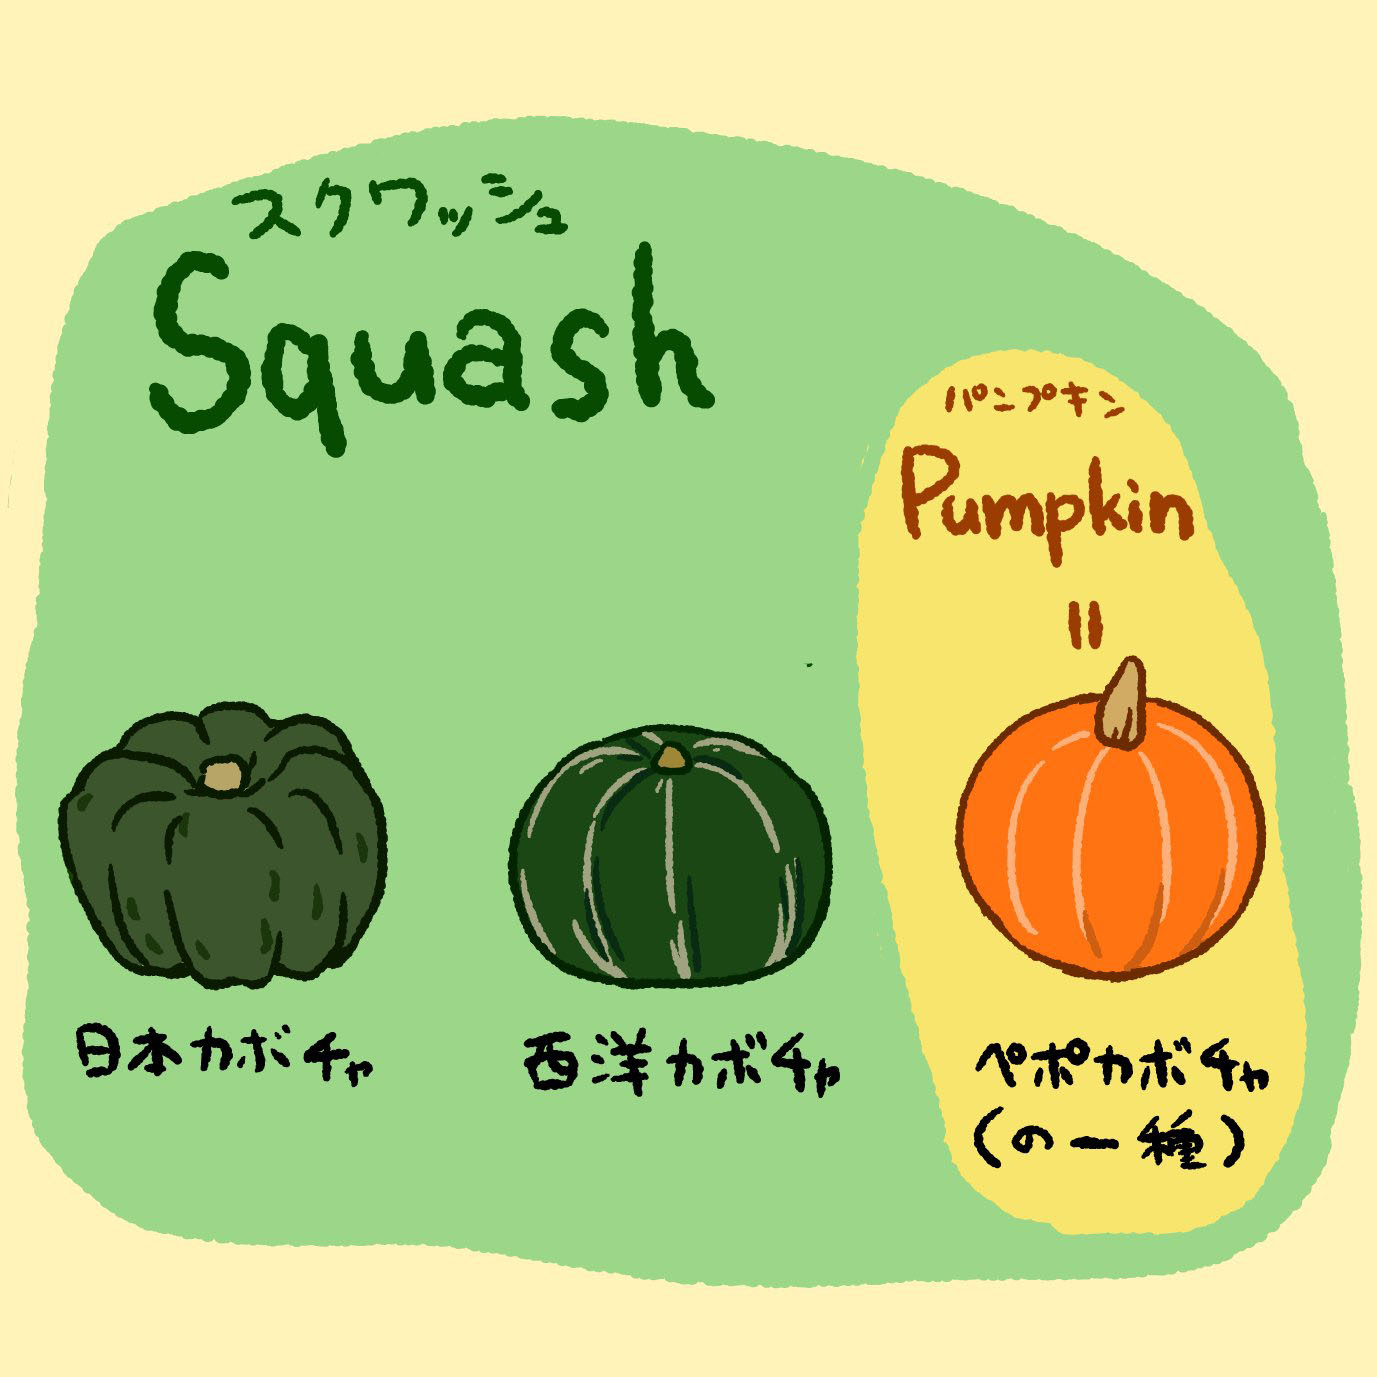 かぼちゃさん専用 - library.iainponorogo.ac.id